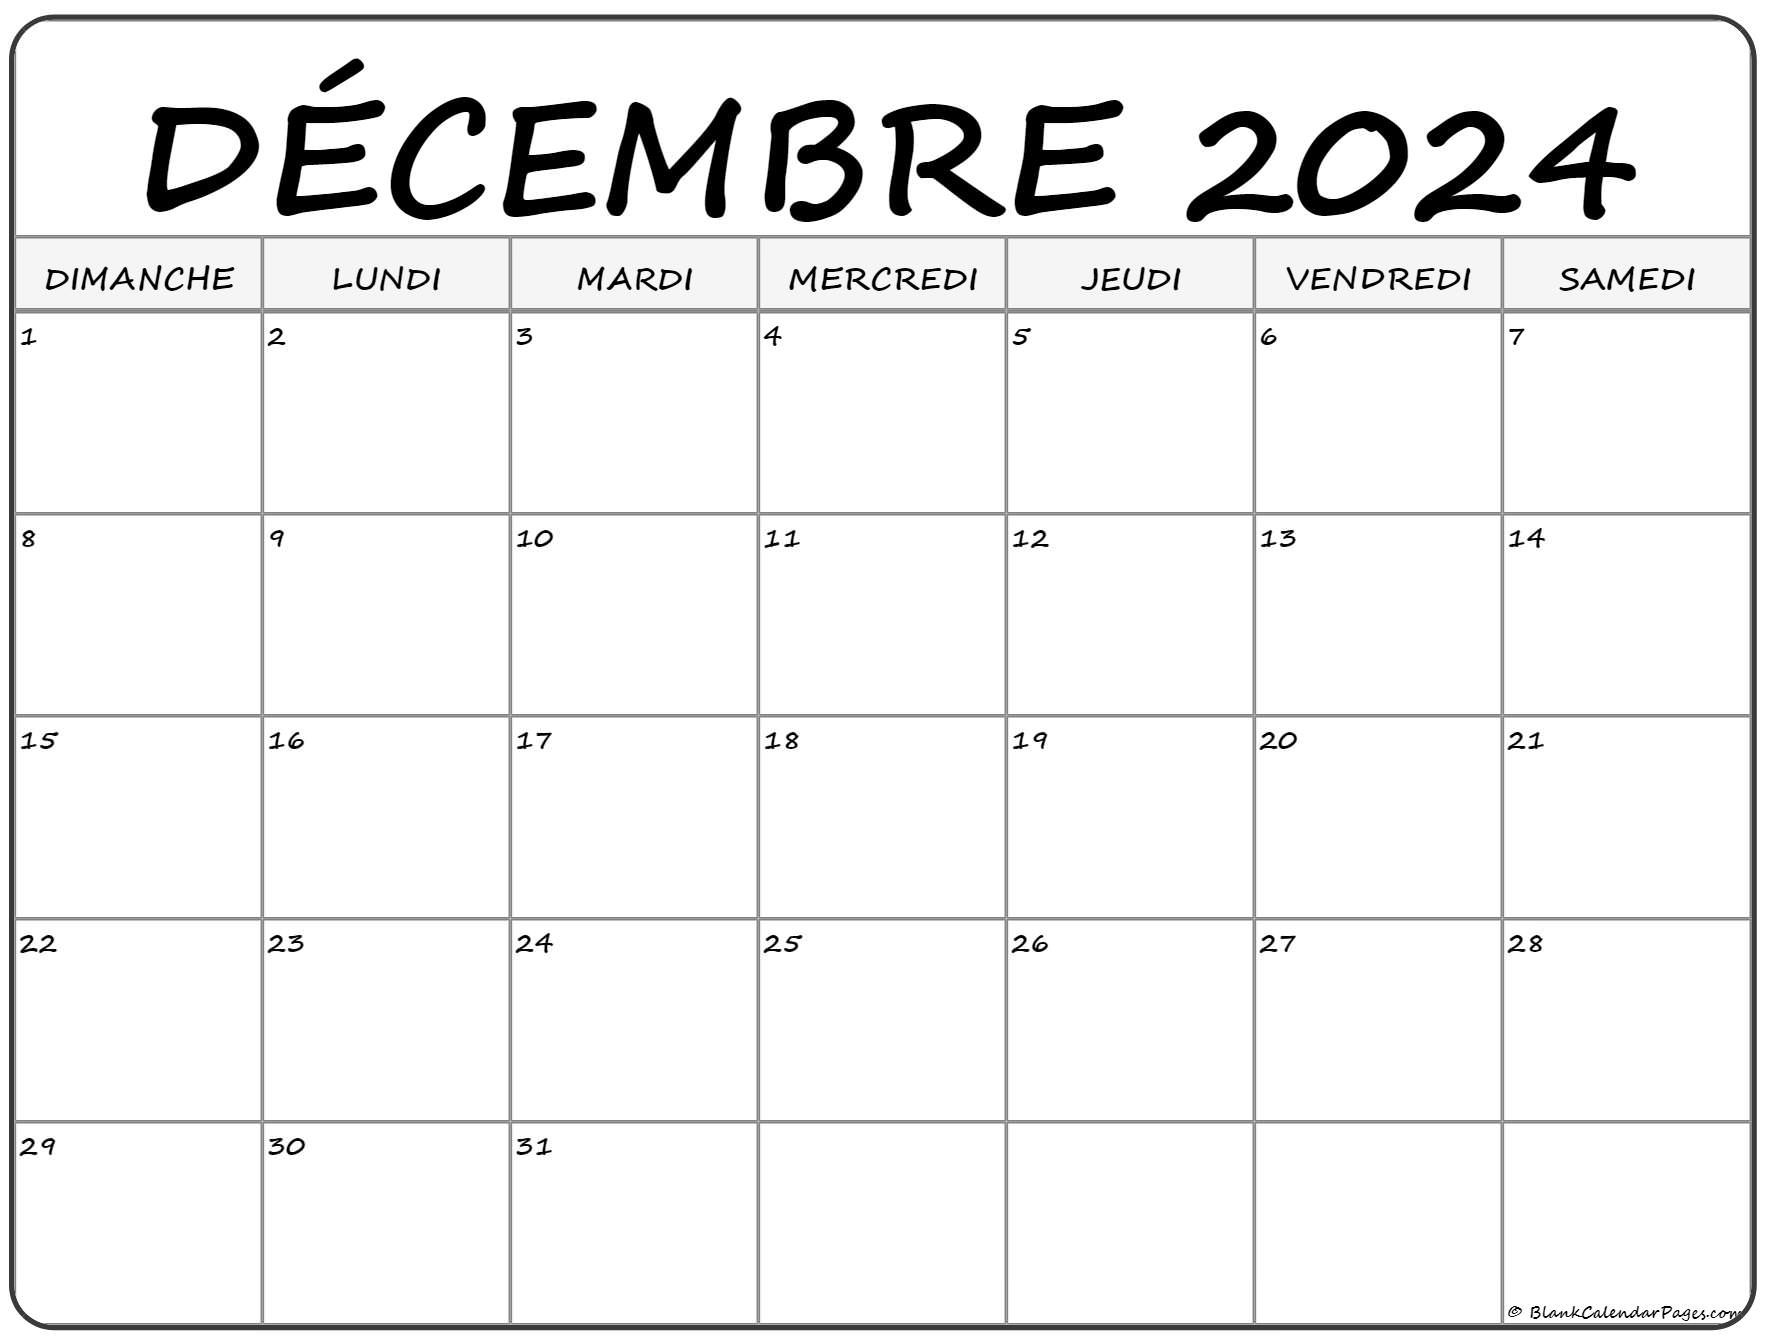 Calendrier Decembre 2022 décembre 2022 calendrier imprimable | Calendrier gratuit